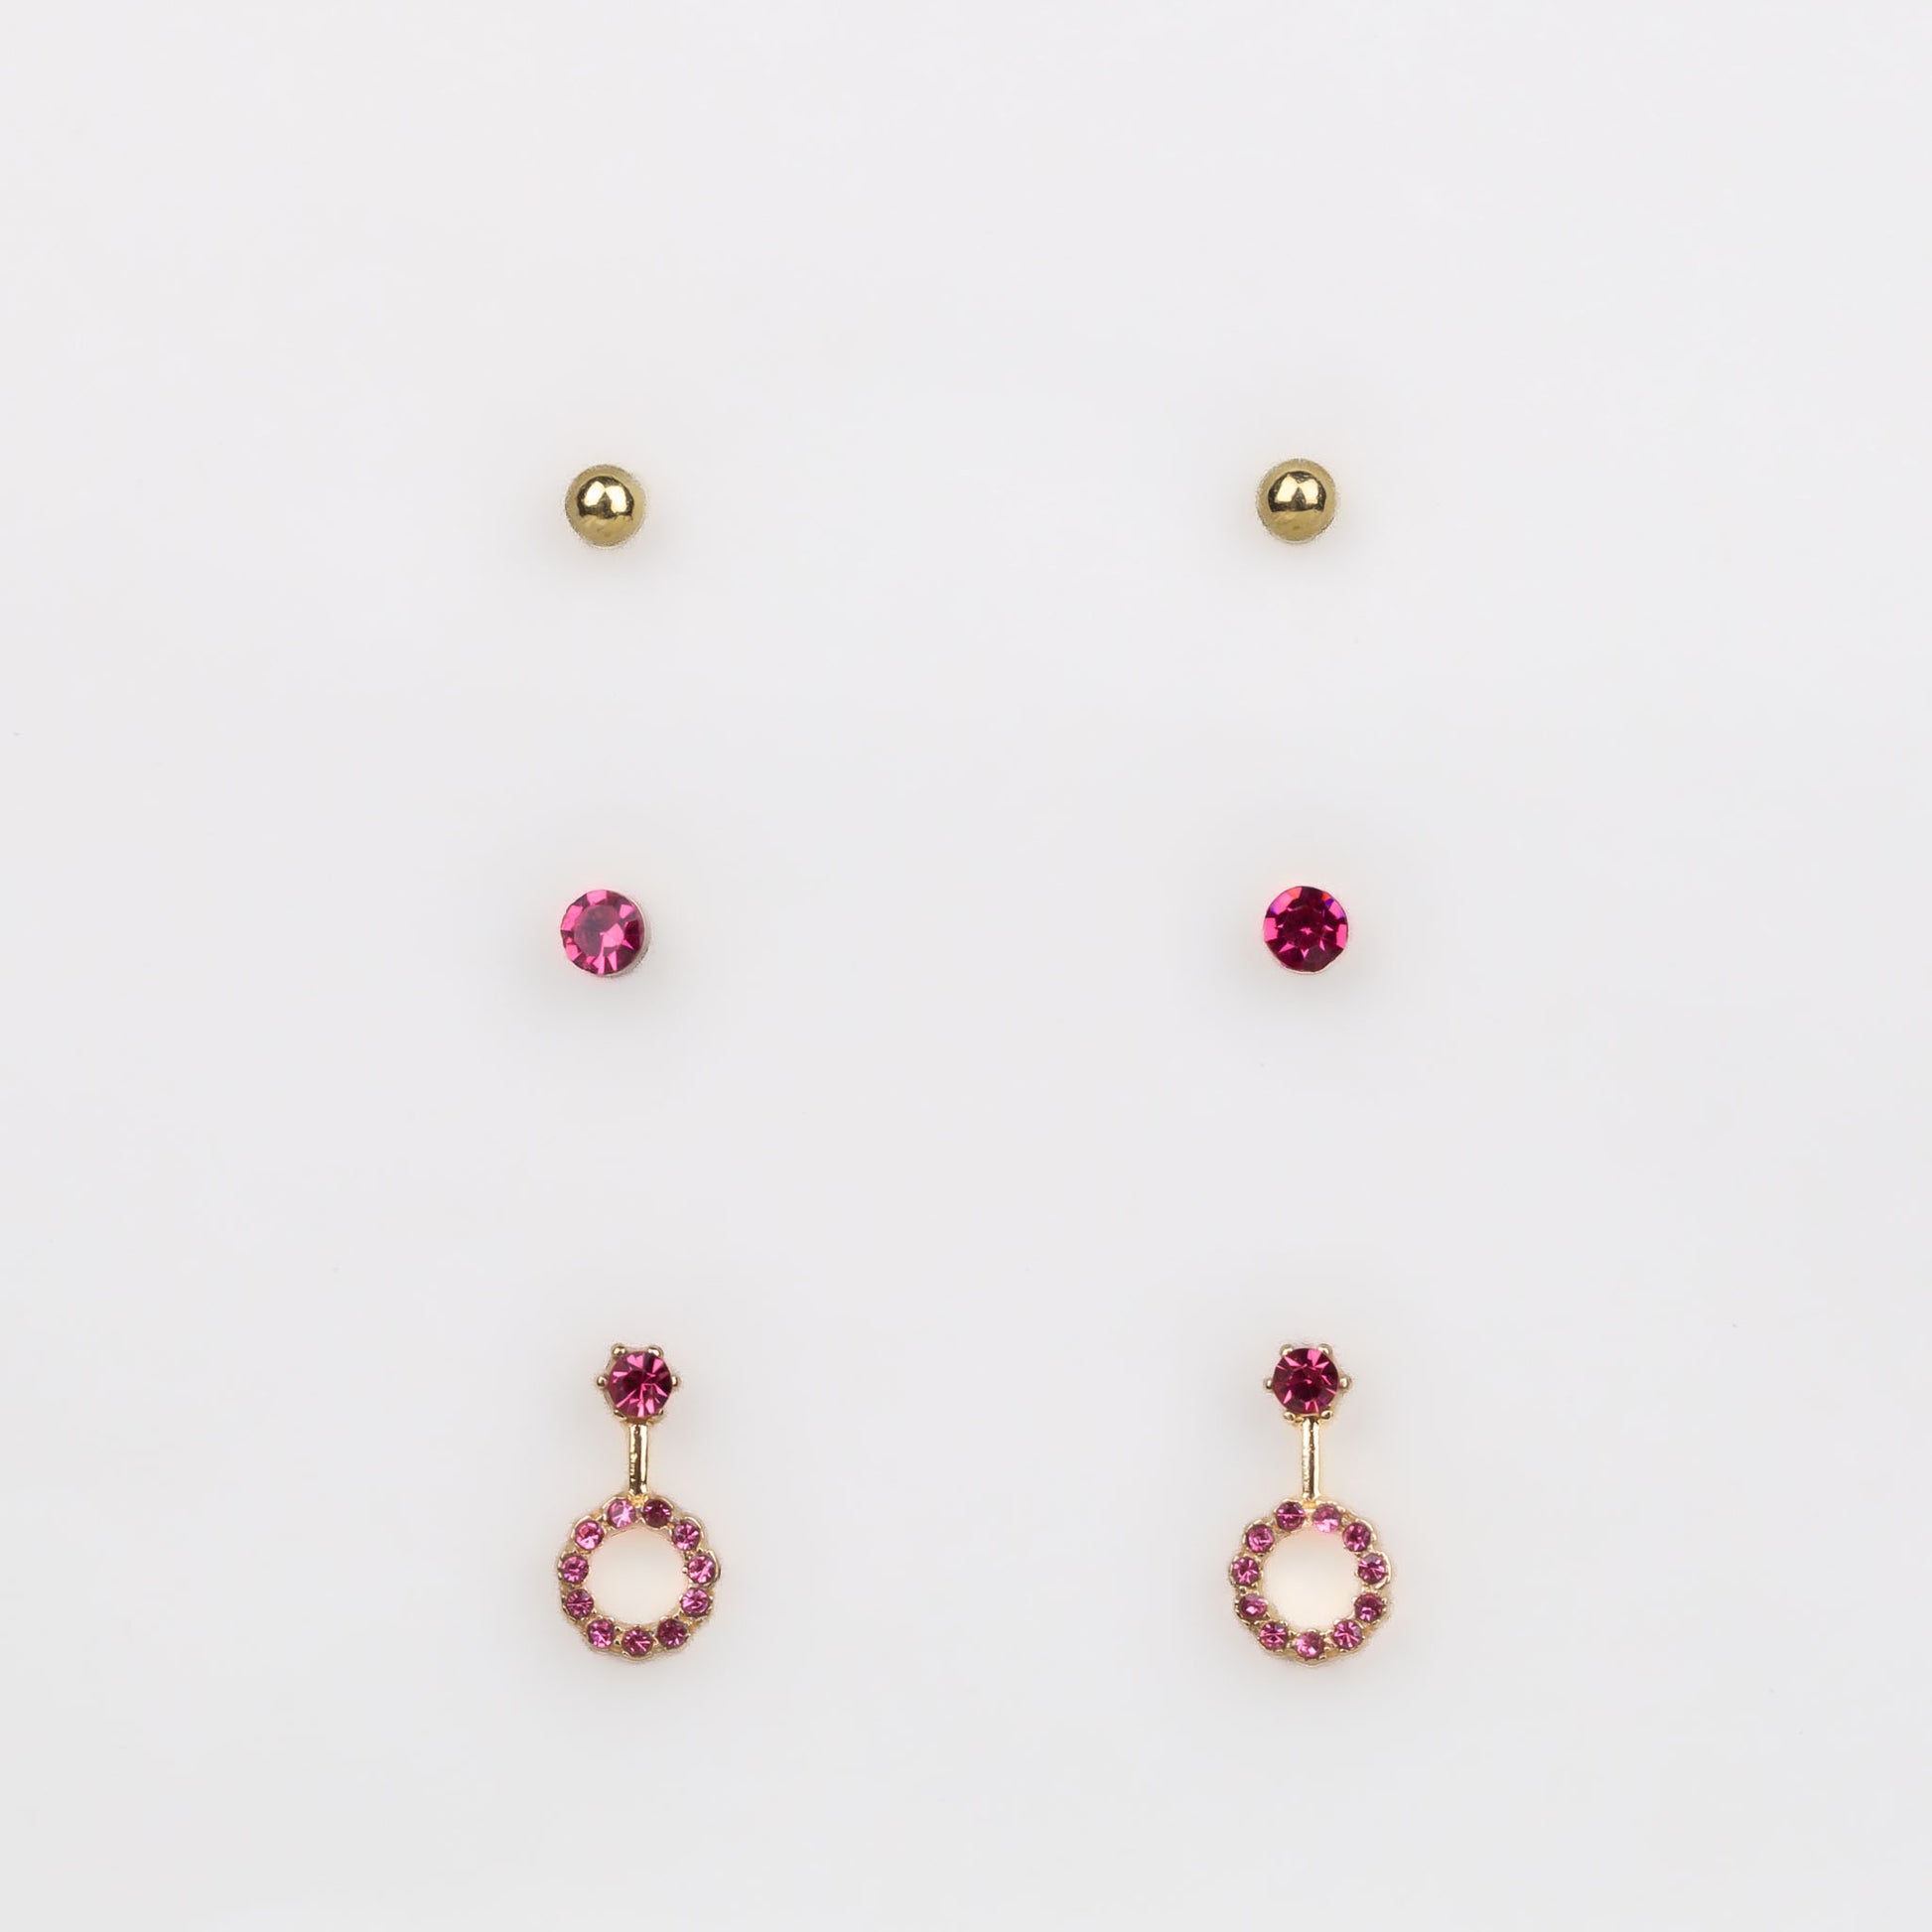 Cercei mici aurii discreți cu formă de amuletă și pietre, set 3 perechi - Roz